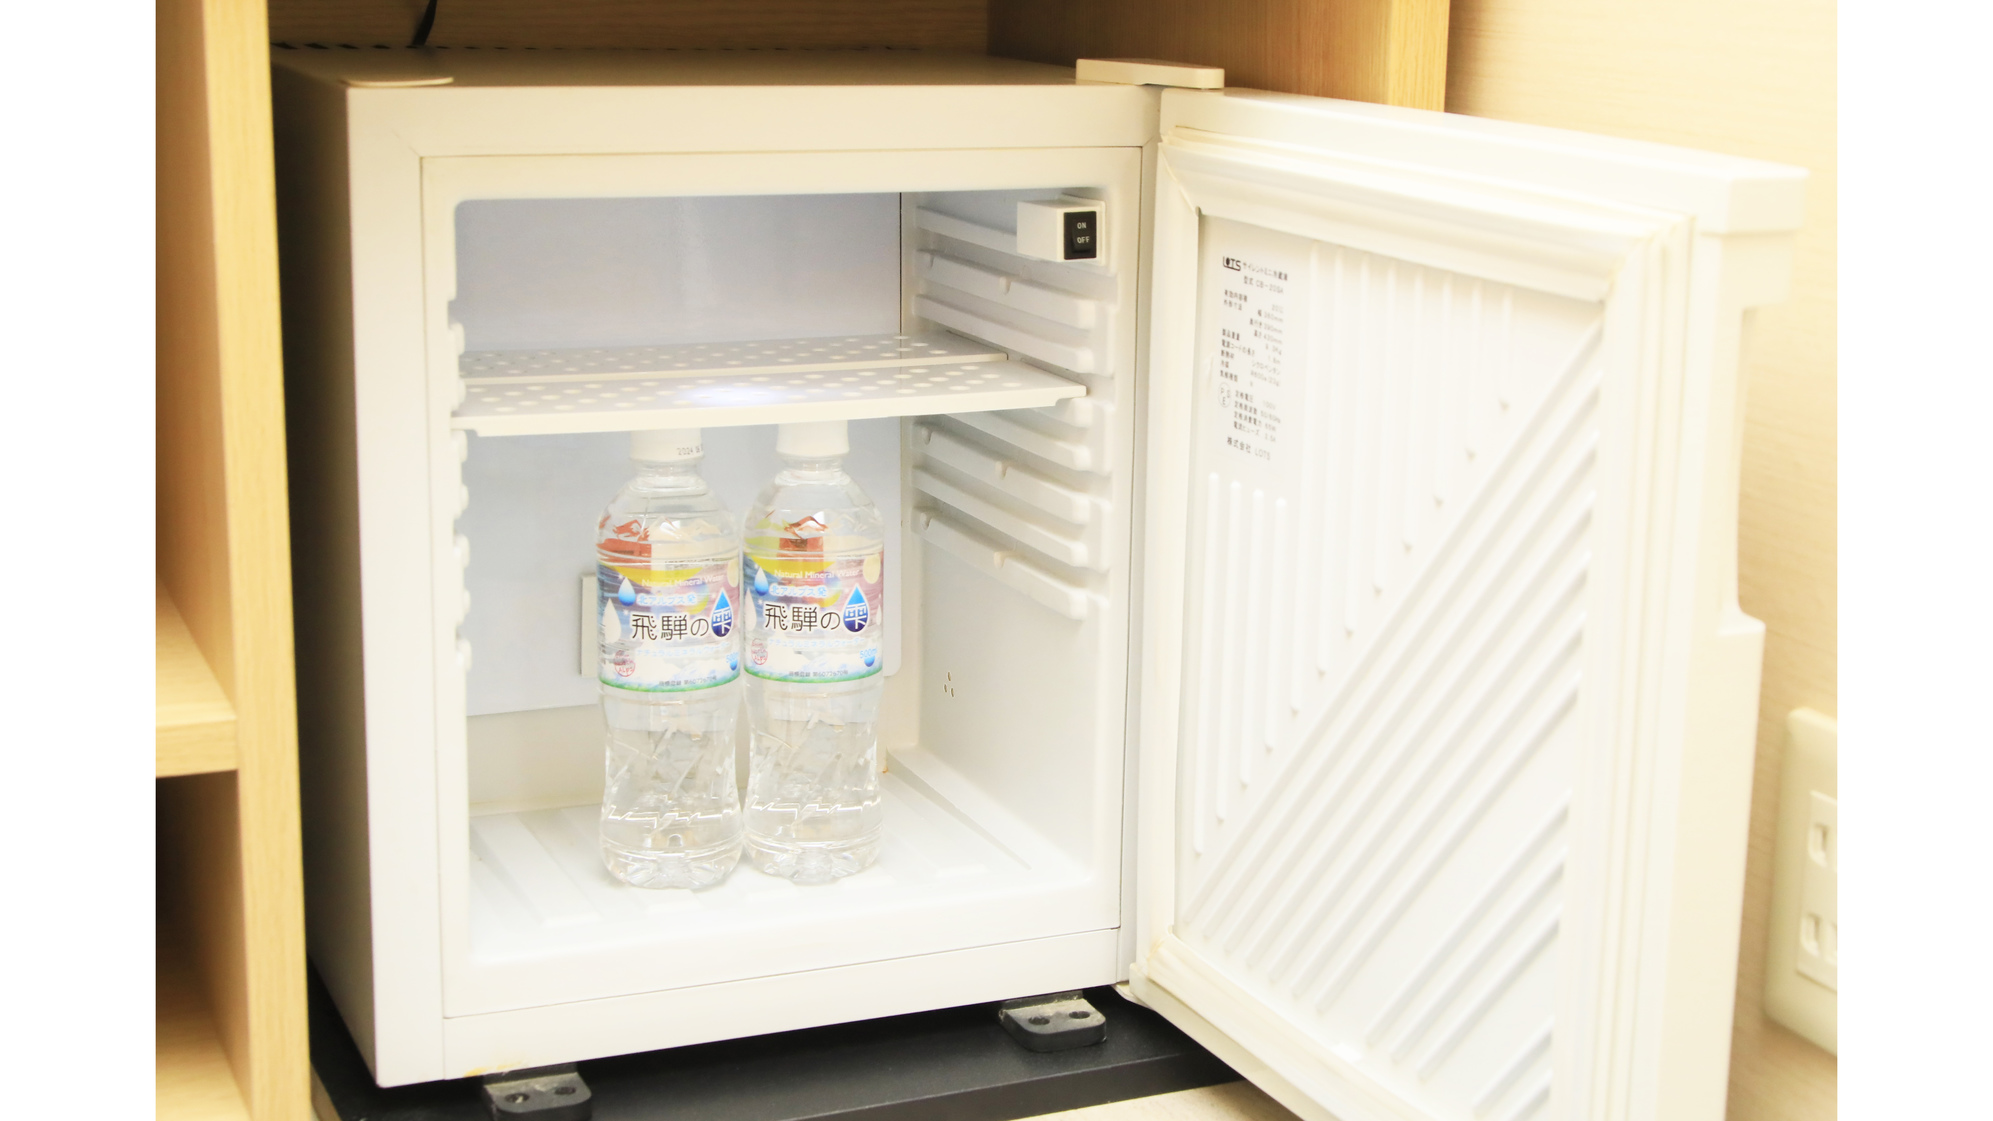 客室冷蔵庫。冷凍機能はございません(ミネラルウォーターは実際にはございません)。